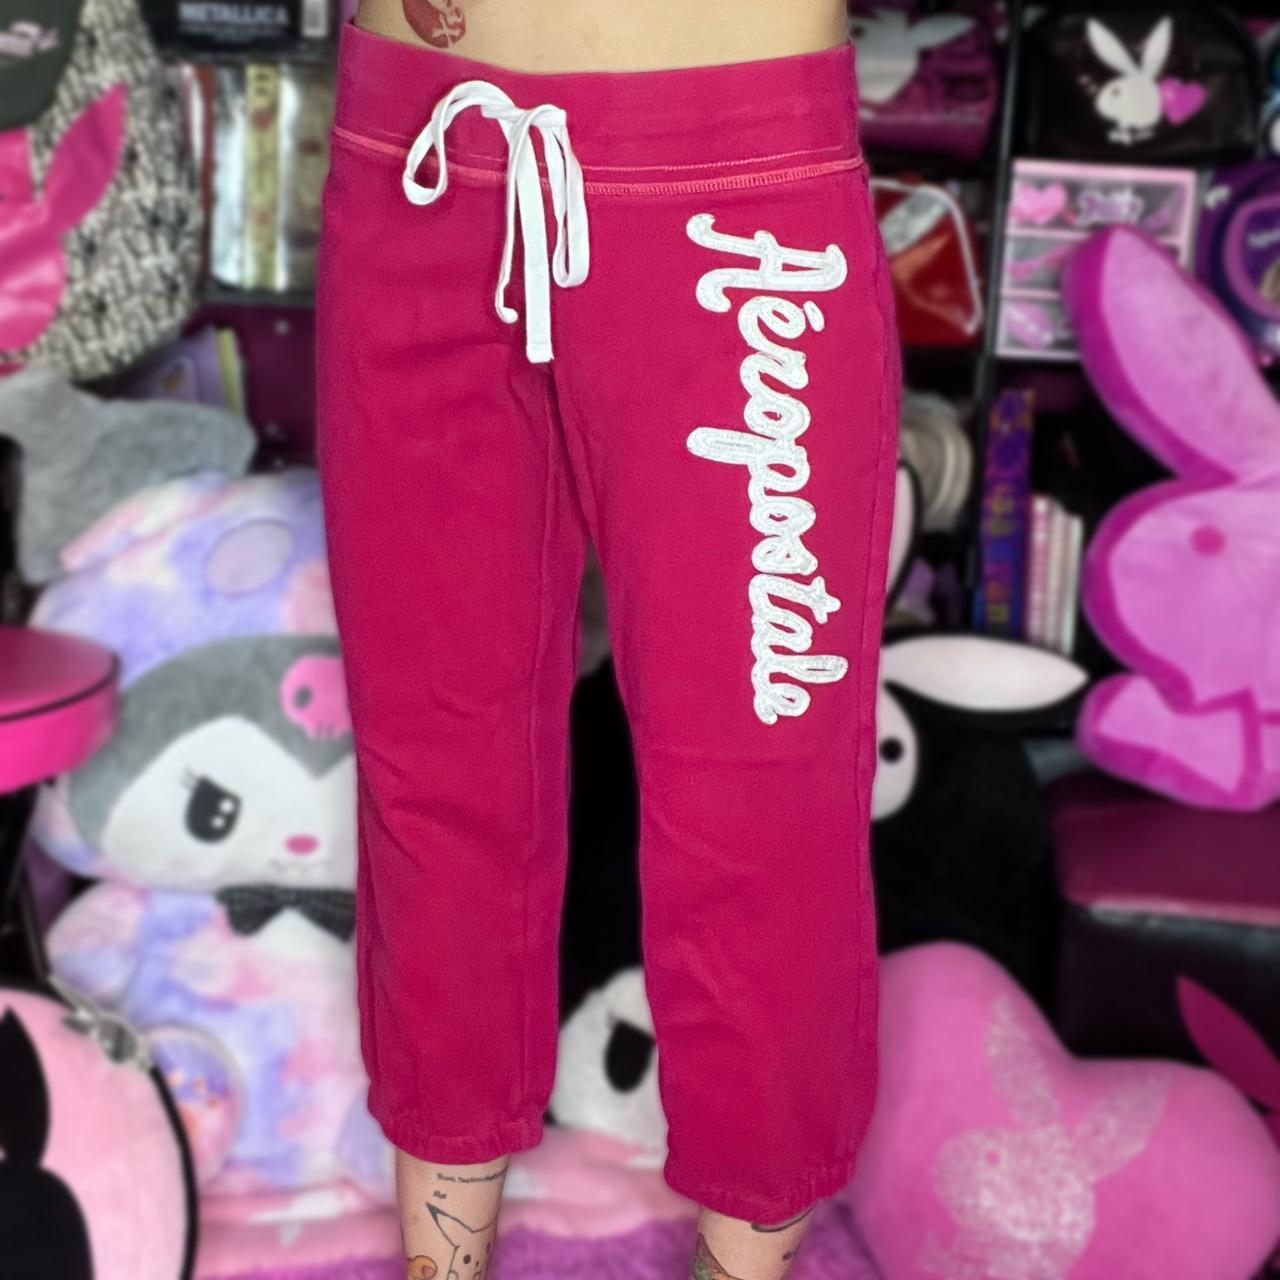 Aeropostale y2k pink sweatpants. Capri/cropped with - Depop